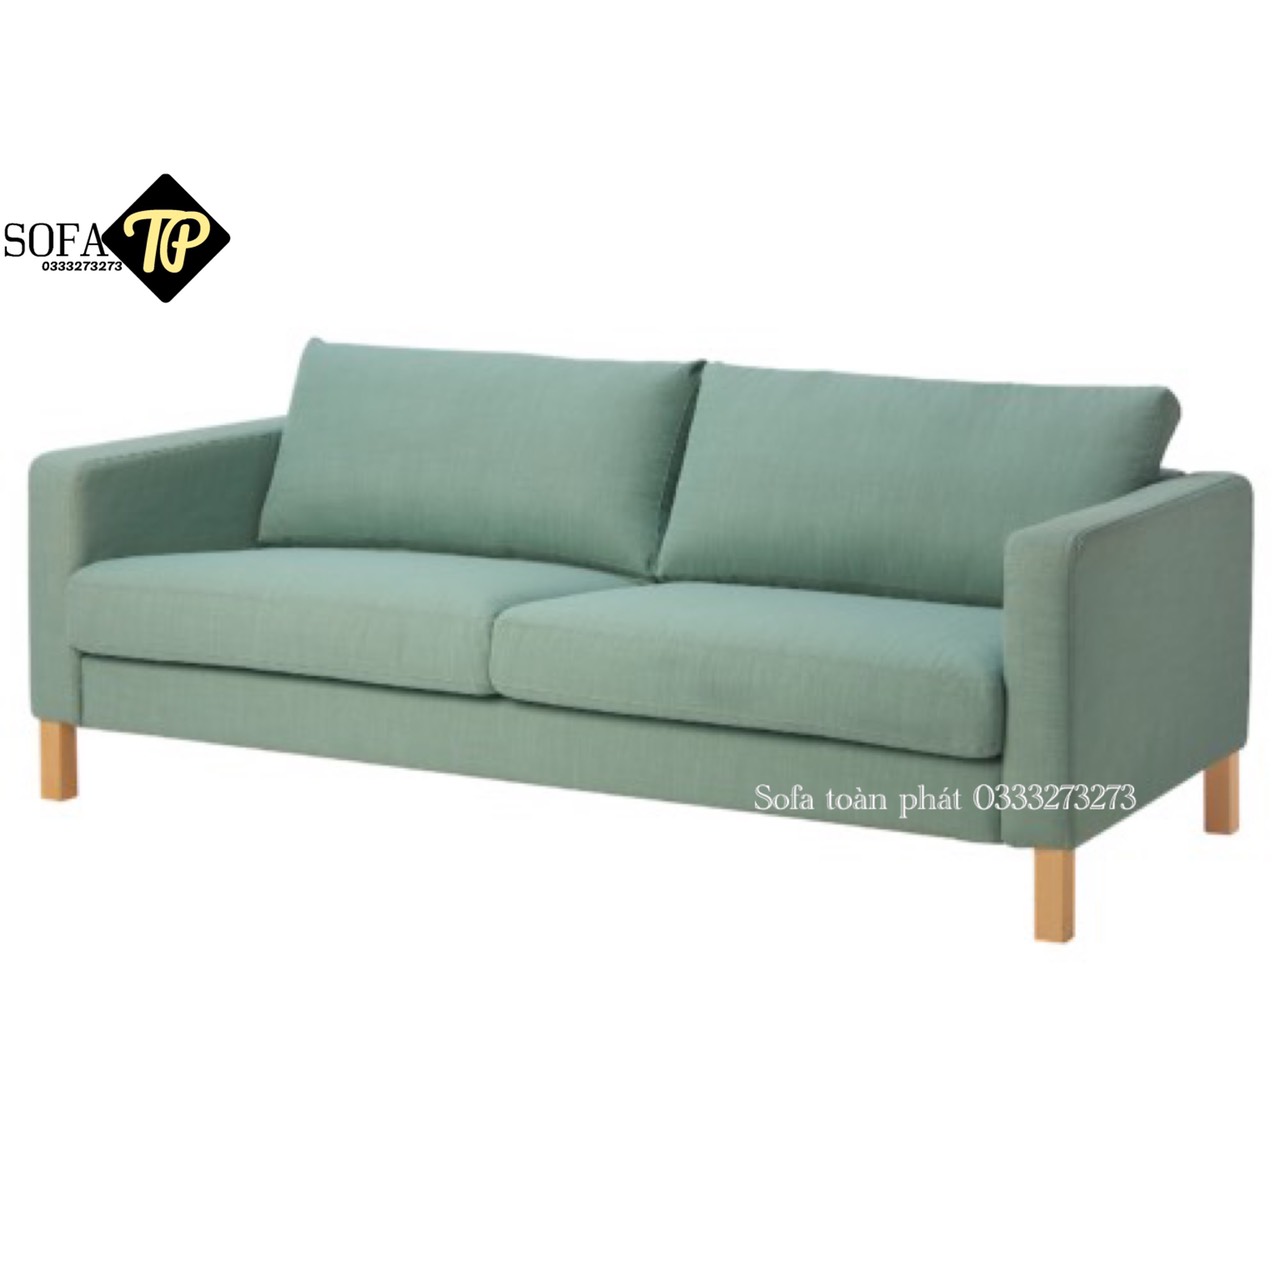 Sofa băng vải BV 09